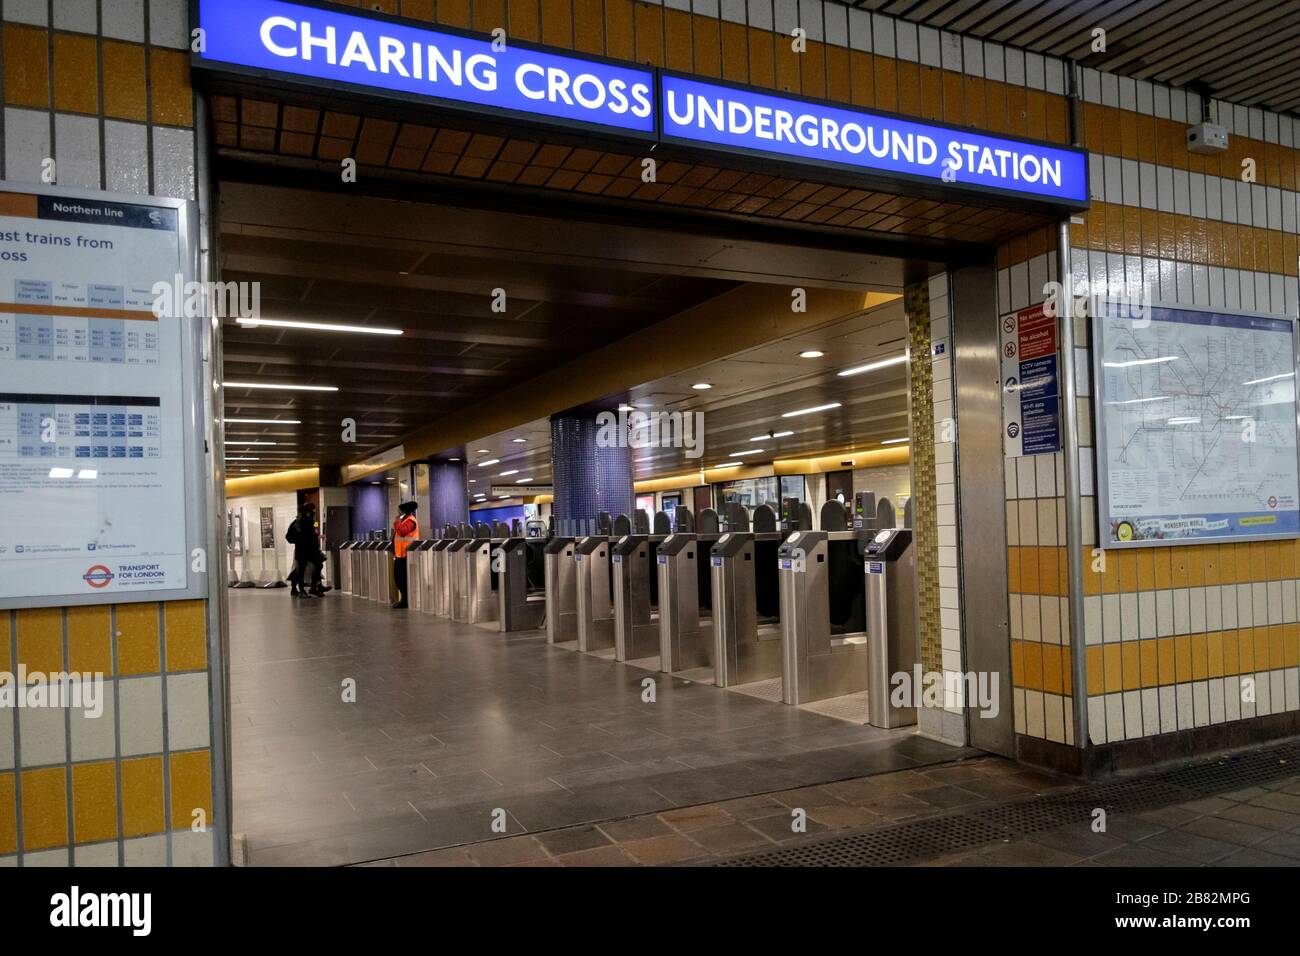 Londra, Regno Unito. 19 marzo 2020. Numerose stazioni della metropolitana sulla rete di trasporto di Londra devono essere chiuse, in quanto durante la pandemia di Covid-19 sono previste restrizioni operative. Foto Stock